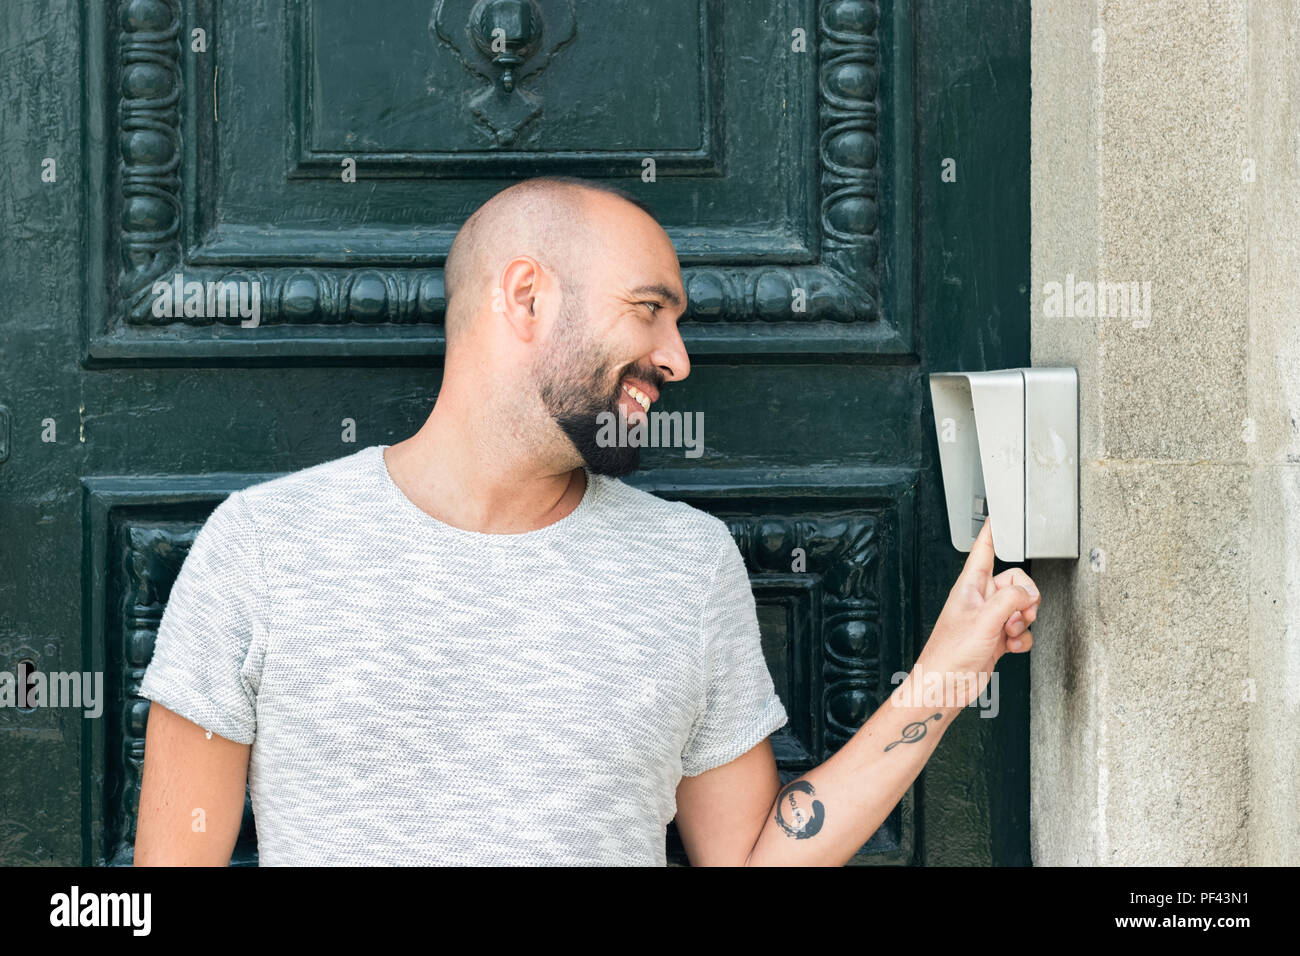 Porträt eines spanischen Mann mit Bart ein Klingeln an der Tür auf der  Straße Stockfotografie - Alamy